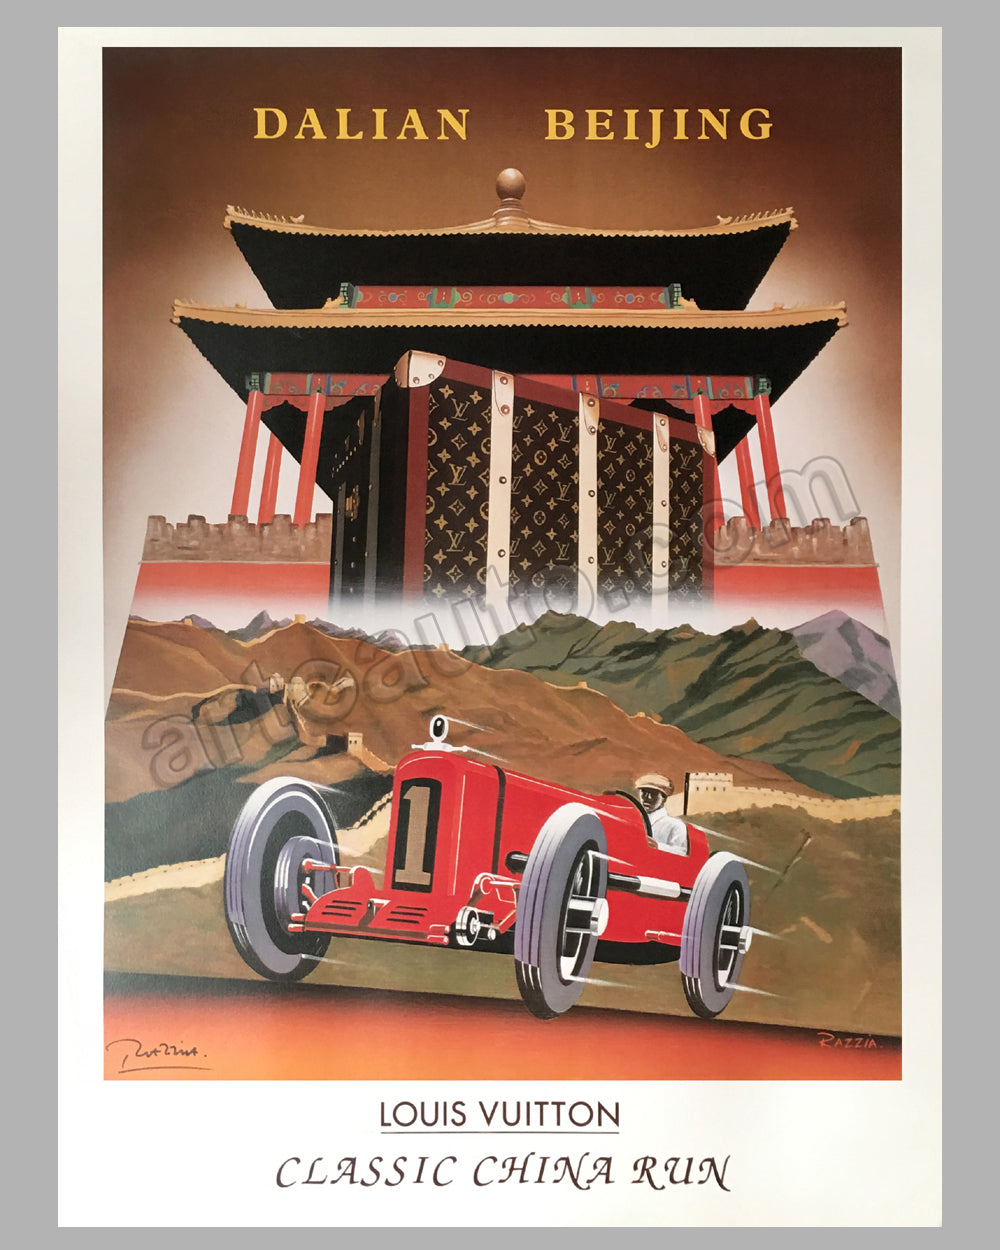 Louis Vuitton Cup, San Francisco, 2013 large poster by Razzia - l'art et  l'automobile